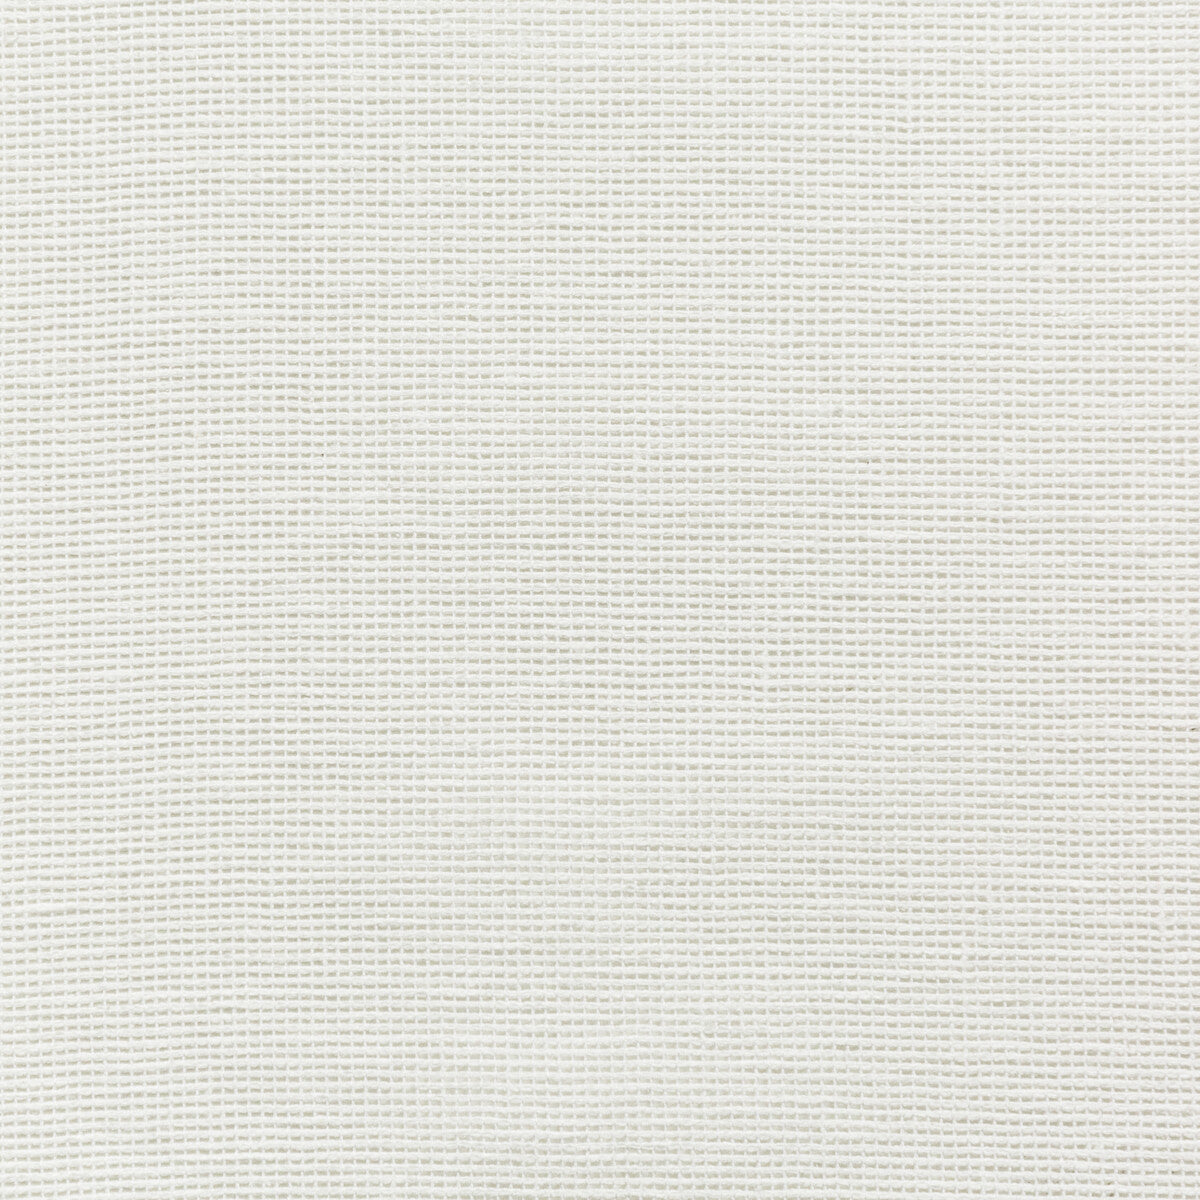 Kravet Basics fabric in 4675-1 color - pattern 4675.1.0 - by Kravet Basics